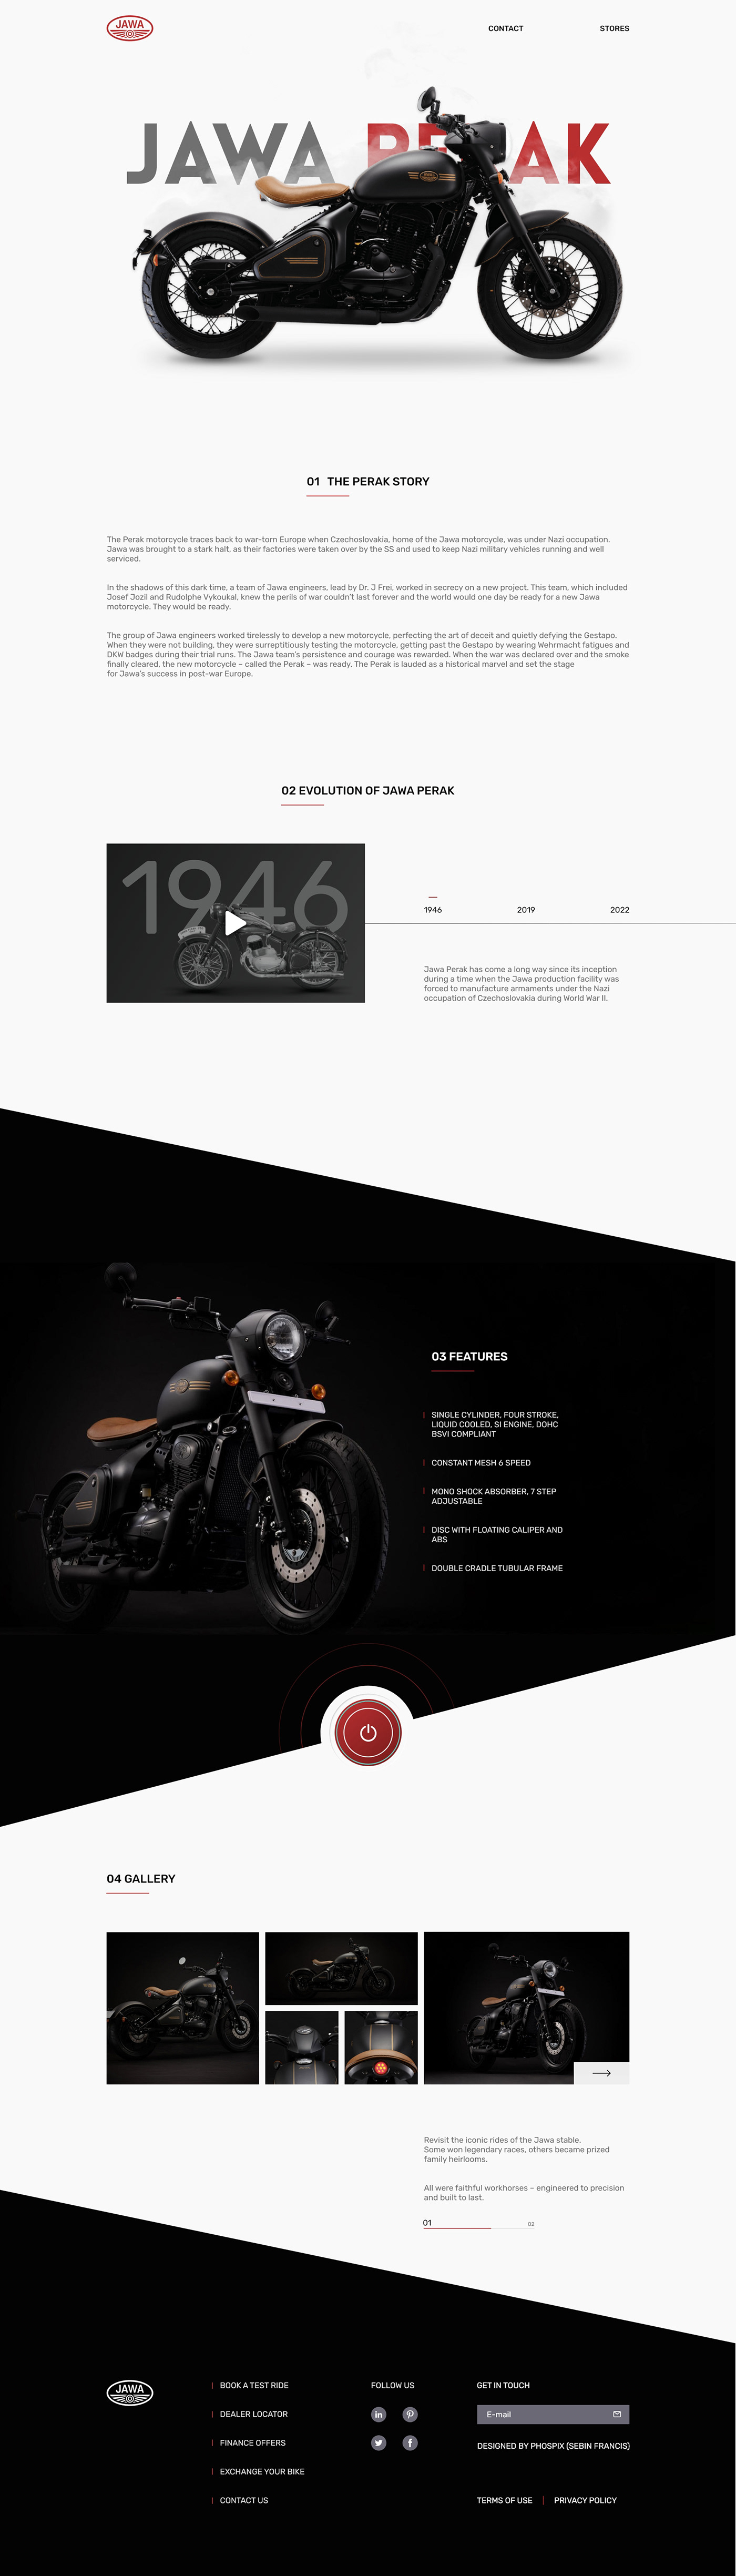 Bike bike website design jawa perak landing page UI UI/UX user interface Web Design  Website